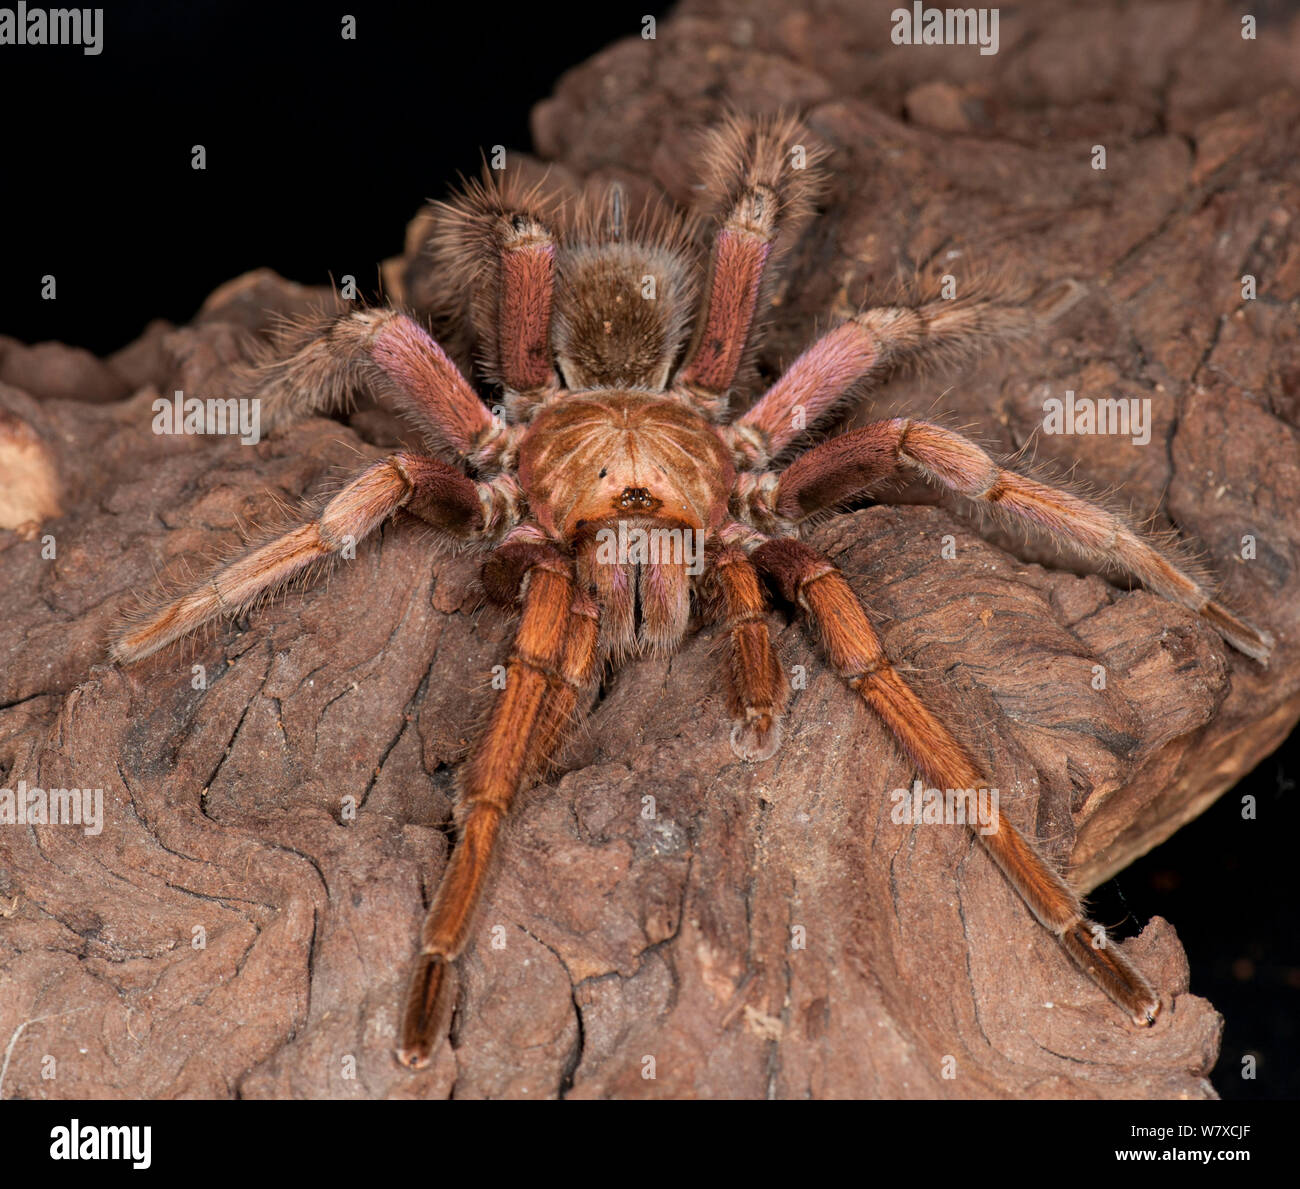 Brazilian pink tarantula (Pamphobeteus platyomma), captive, from South America Stock Photo